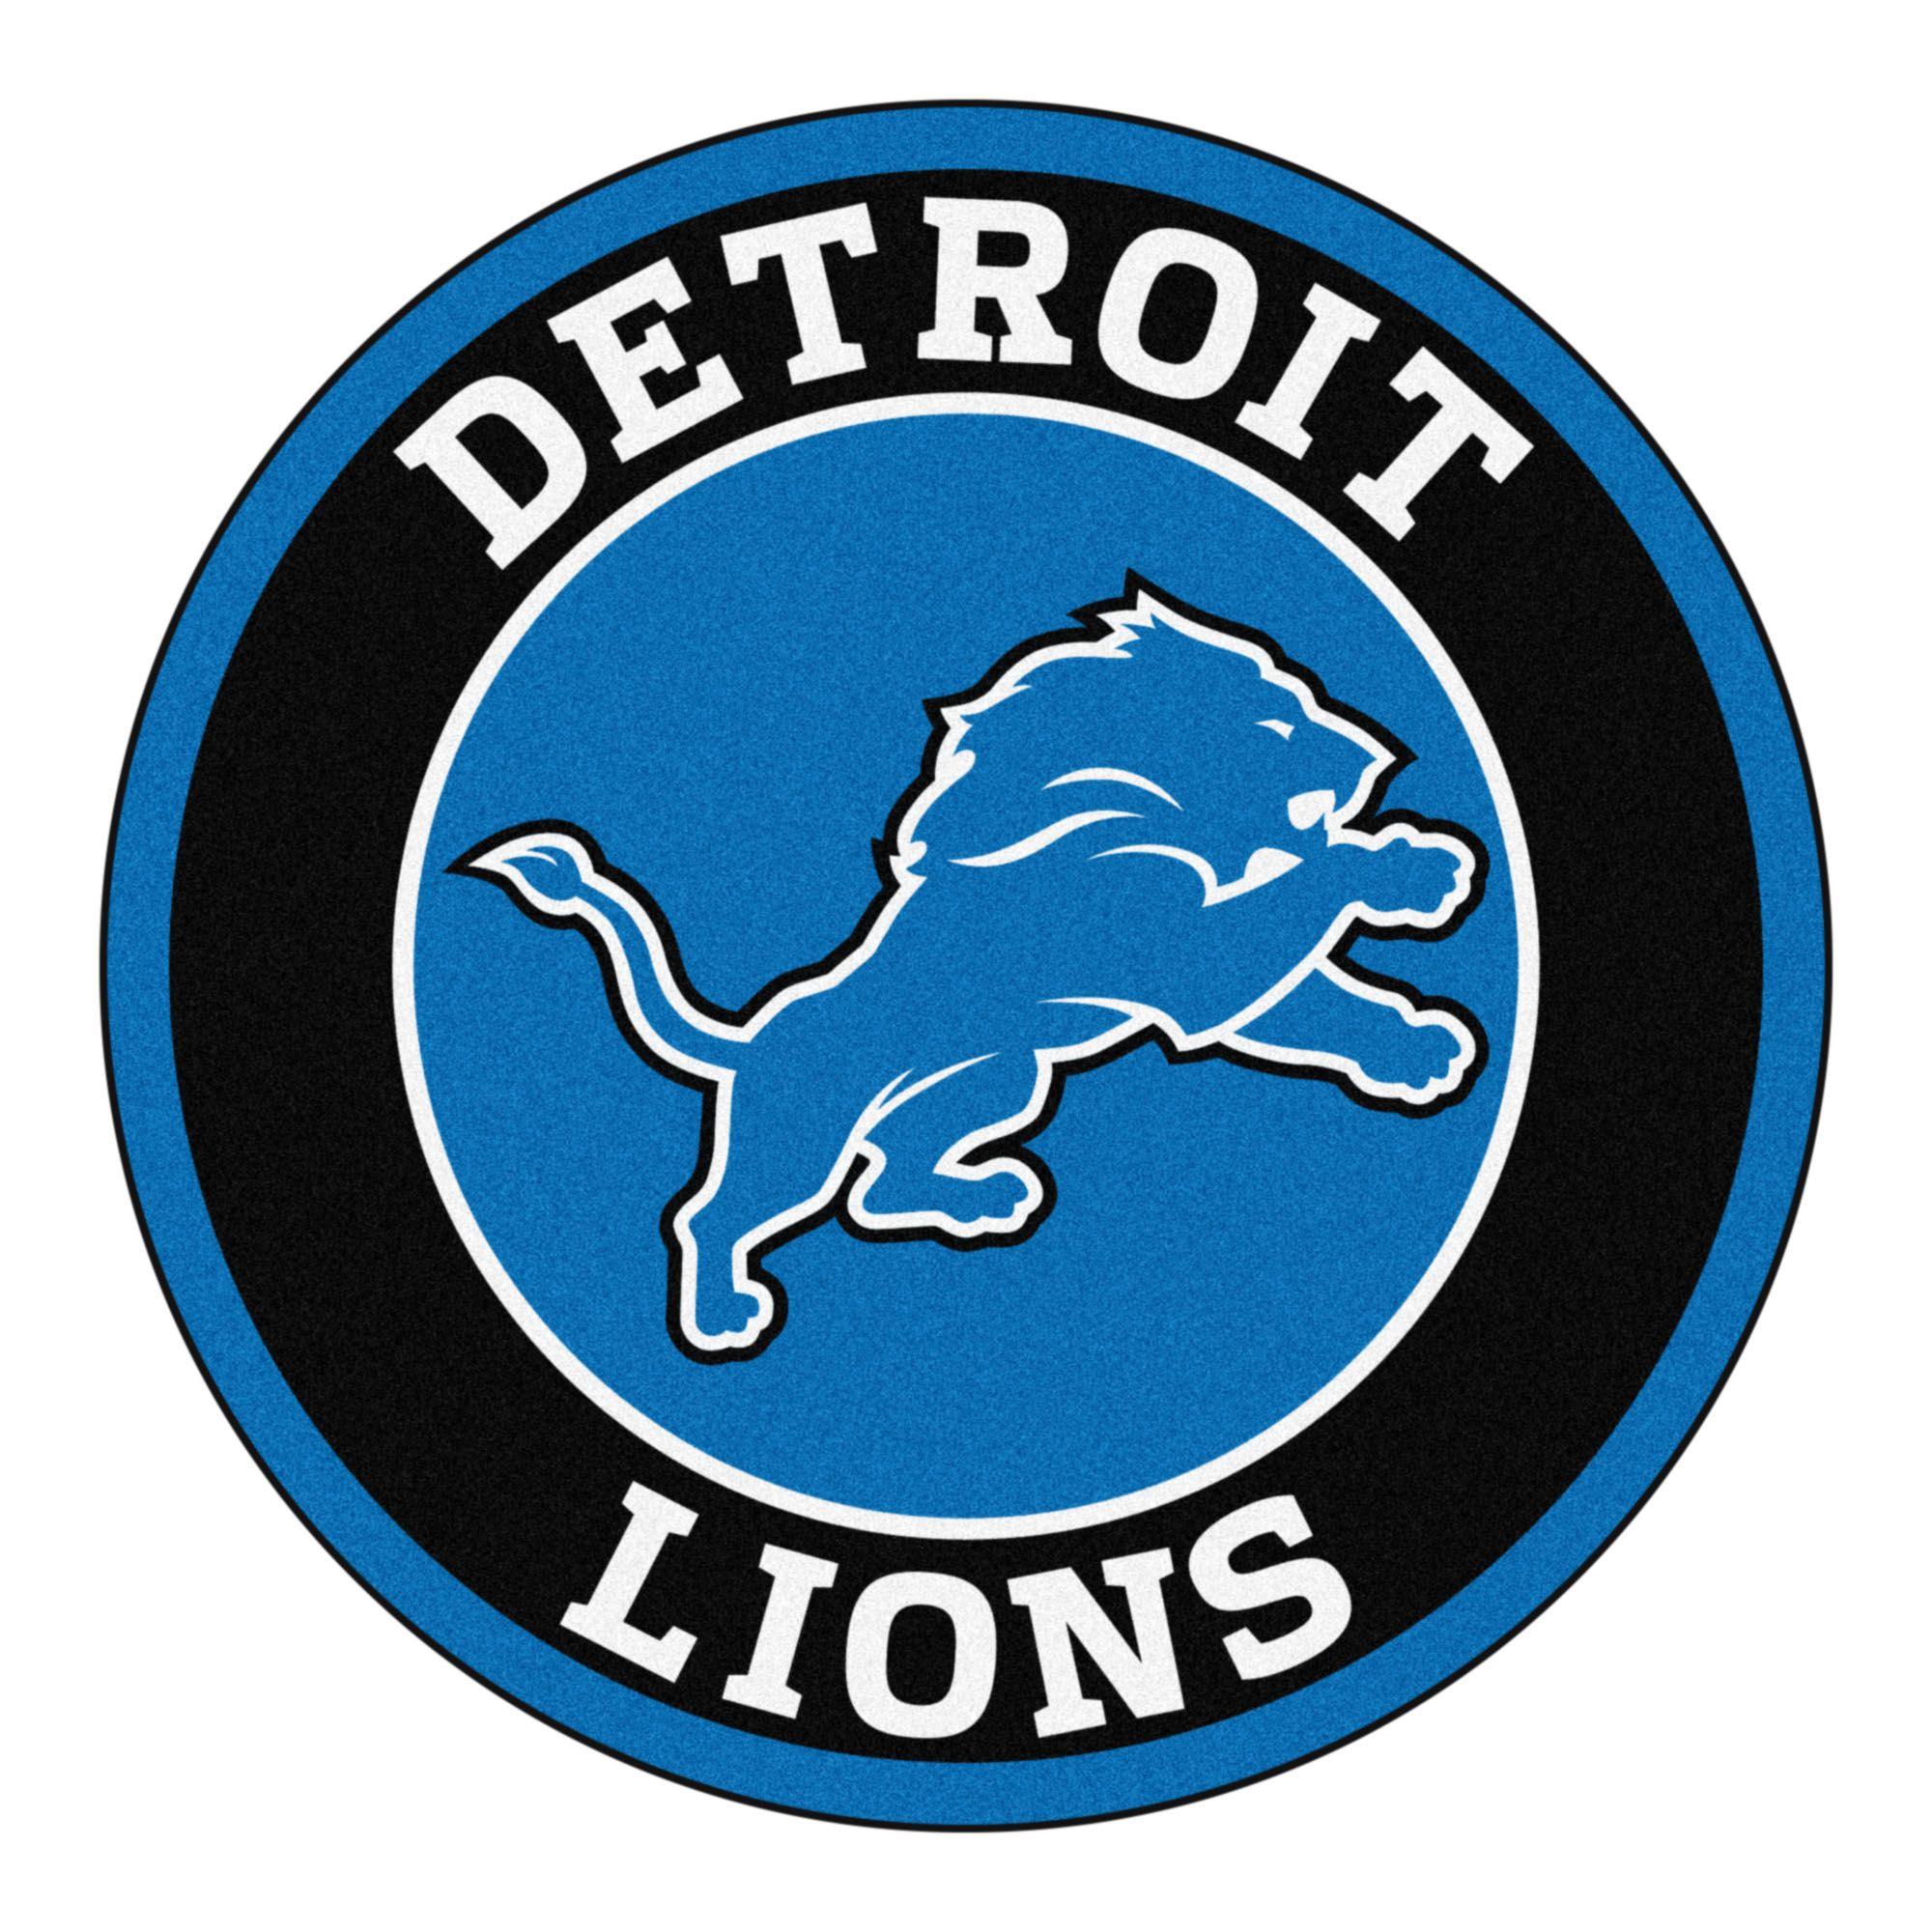 NFL Lions Logo - Detroit lions pictures Logos